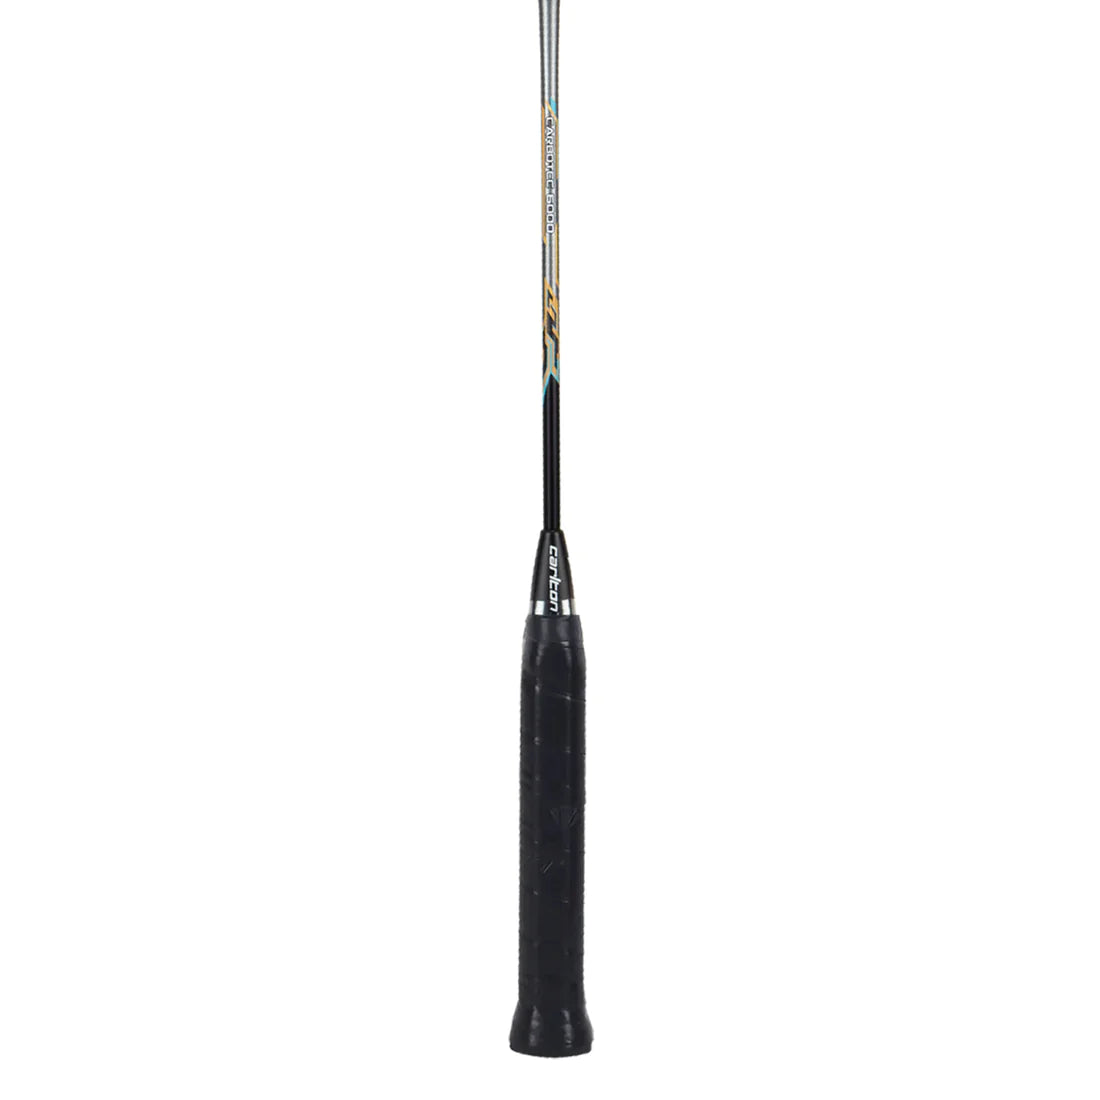 Carlton Carbotec 6000 Strung Badminton Racket - Gunmetal/Black